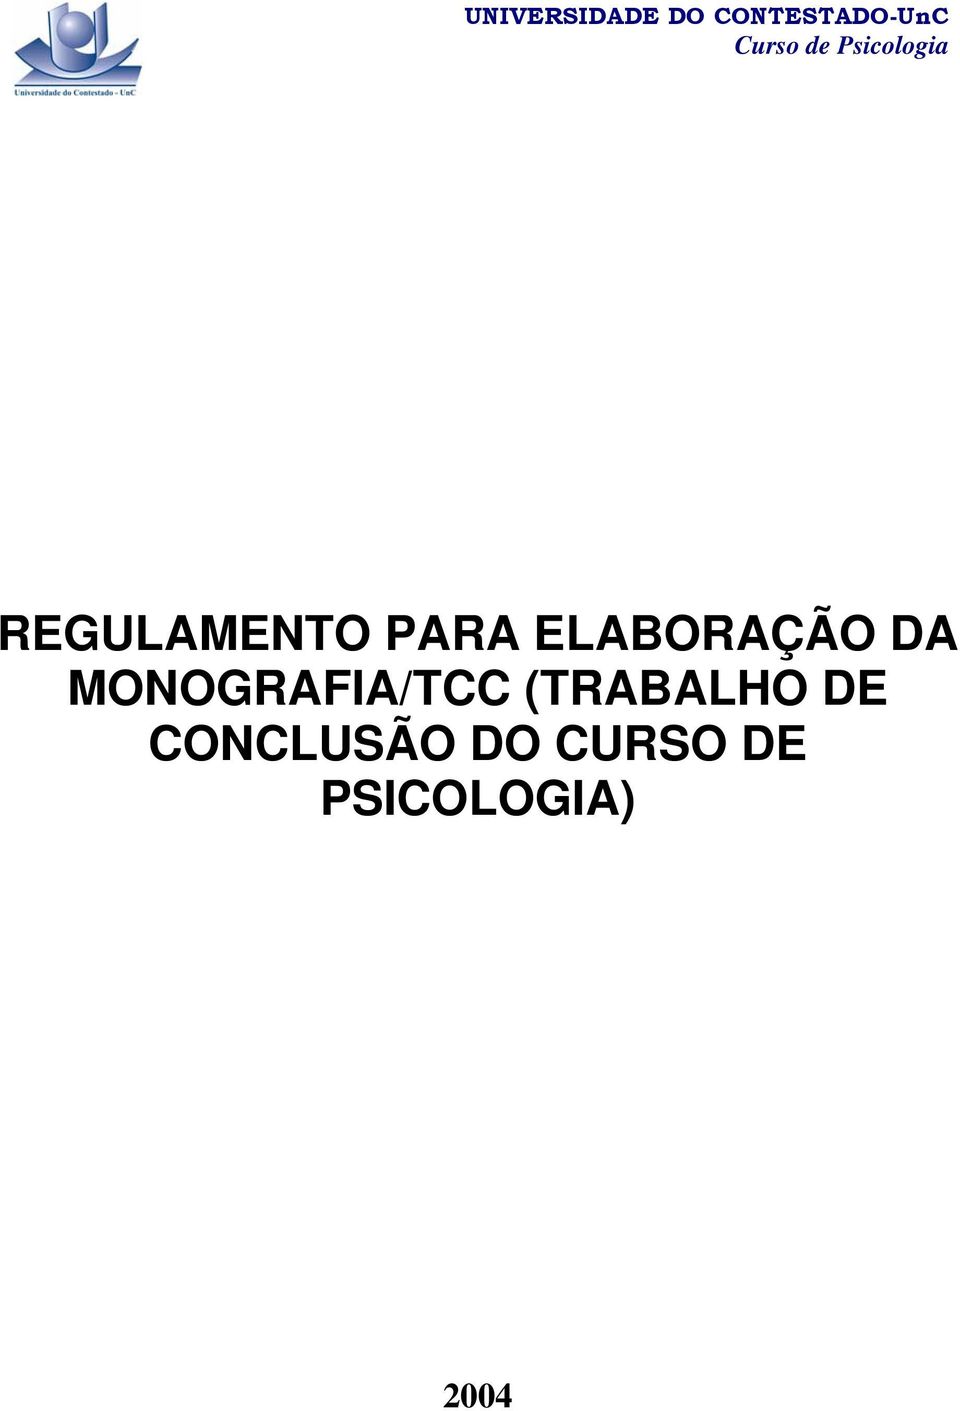 ELABORAÇÃO DA MONOGRAFIA/TCC